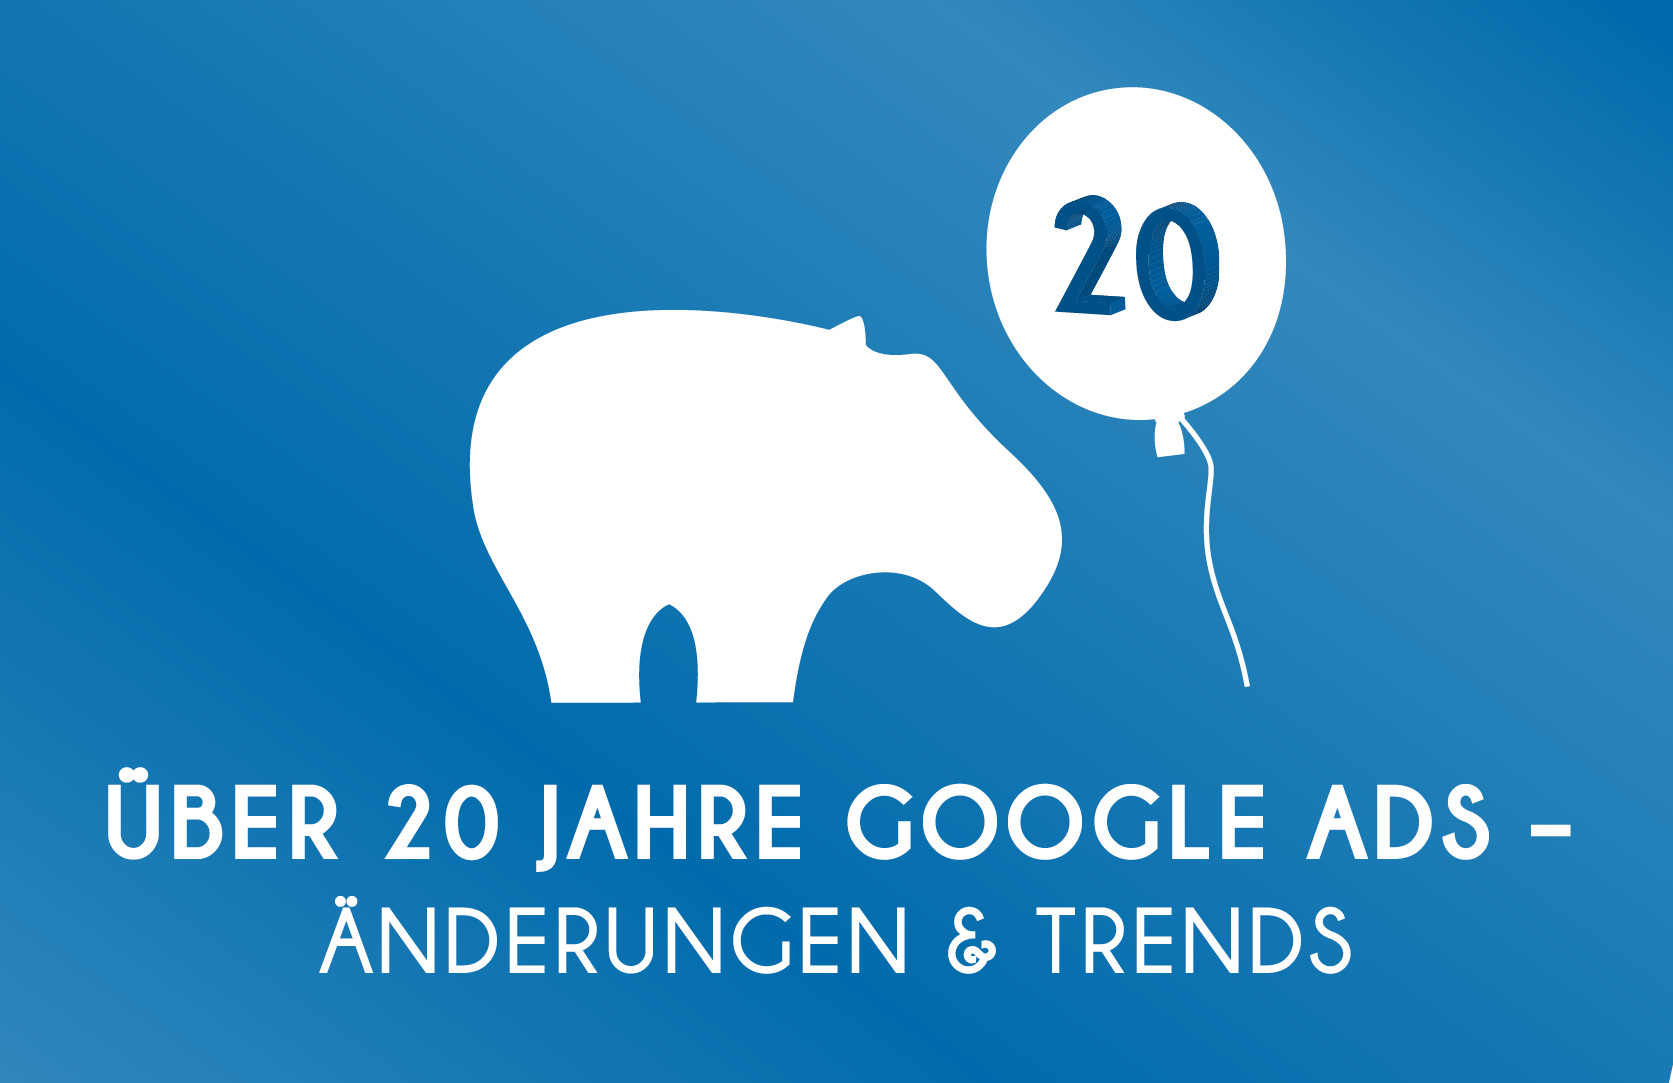 20 Jahre Google Ads - Wichtigsten Änderungen & Trends der letzten Jahre bei Google Ads